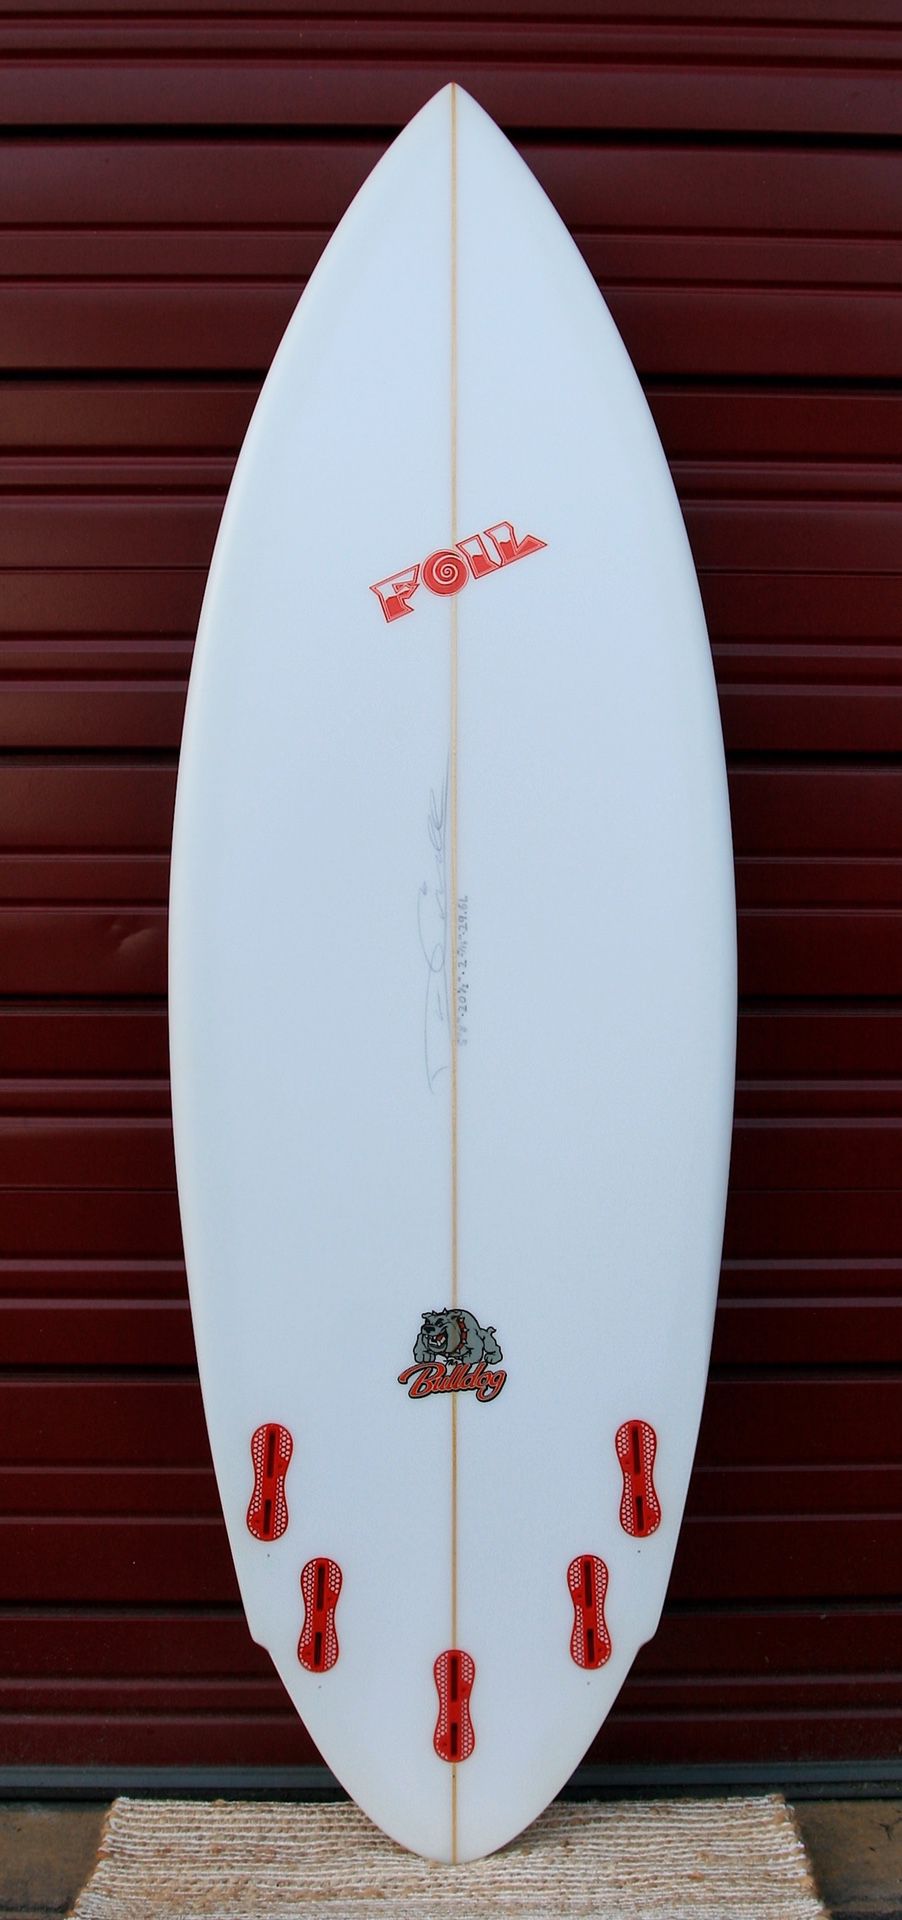 New 5’8” FOIL “The Bulldog” short board surfboard